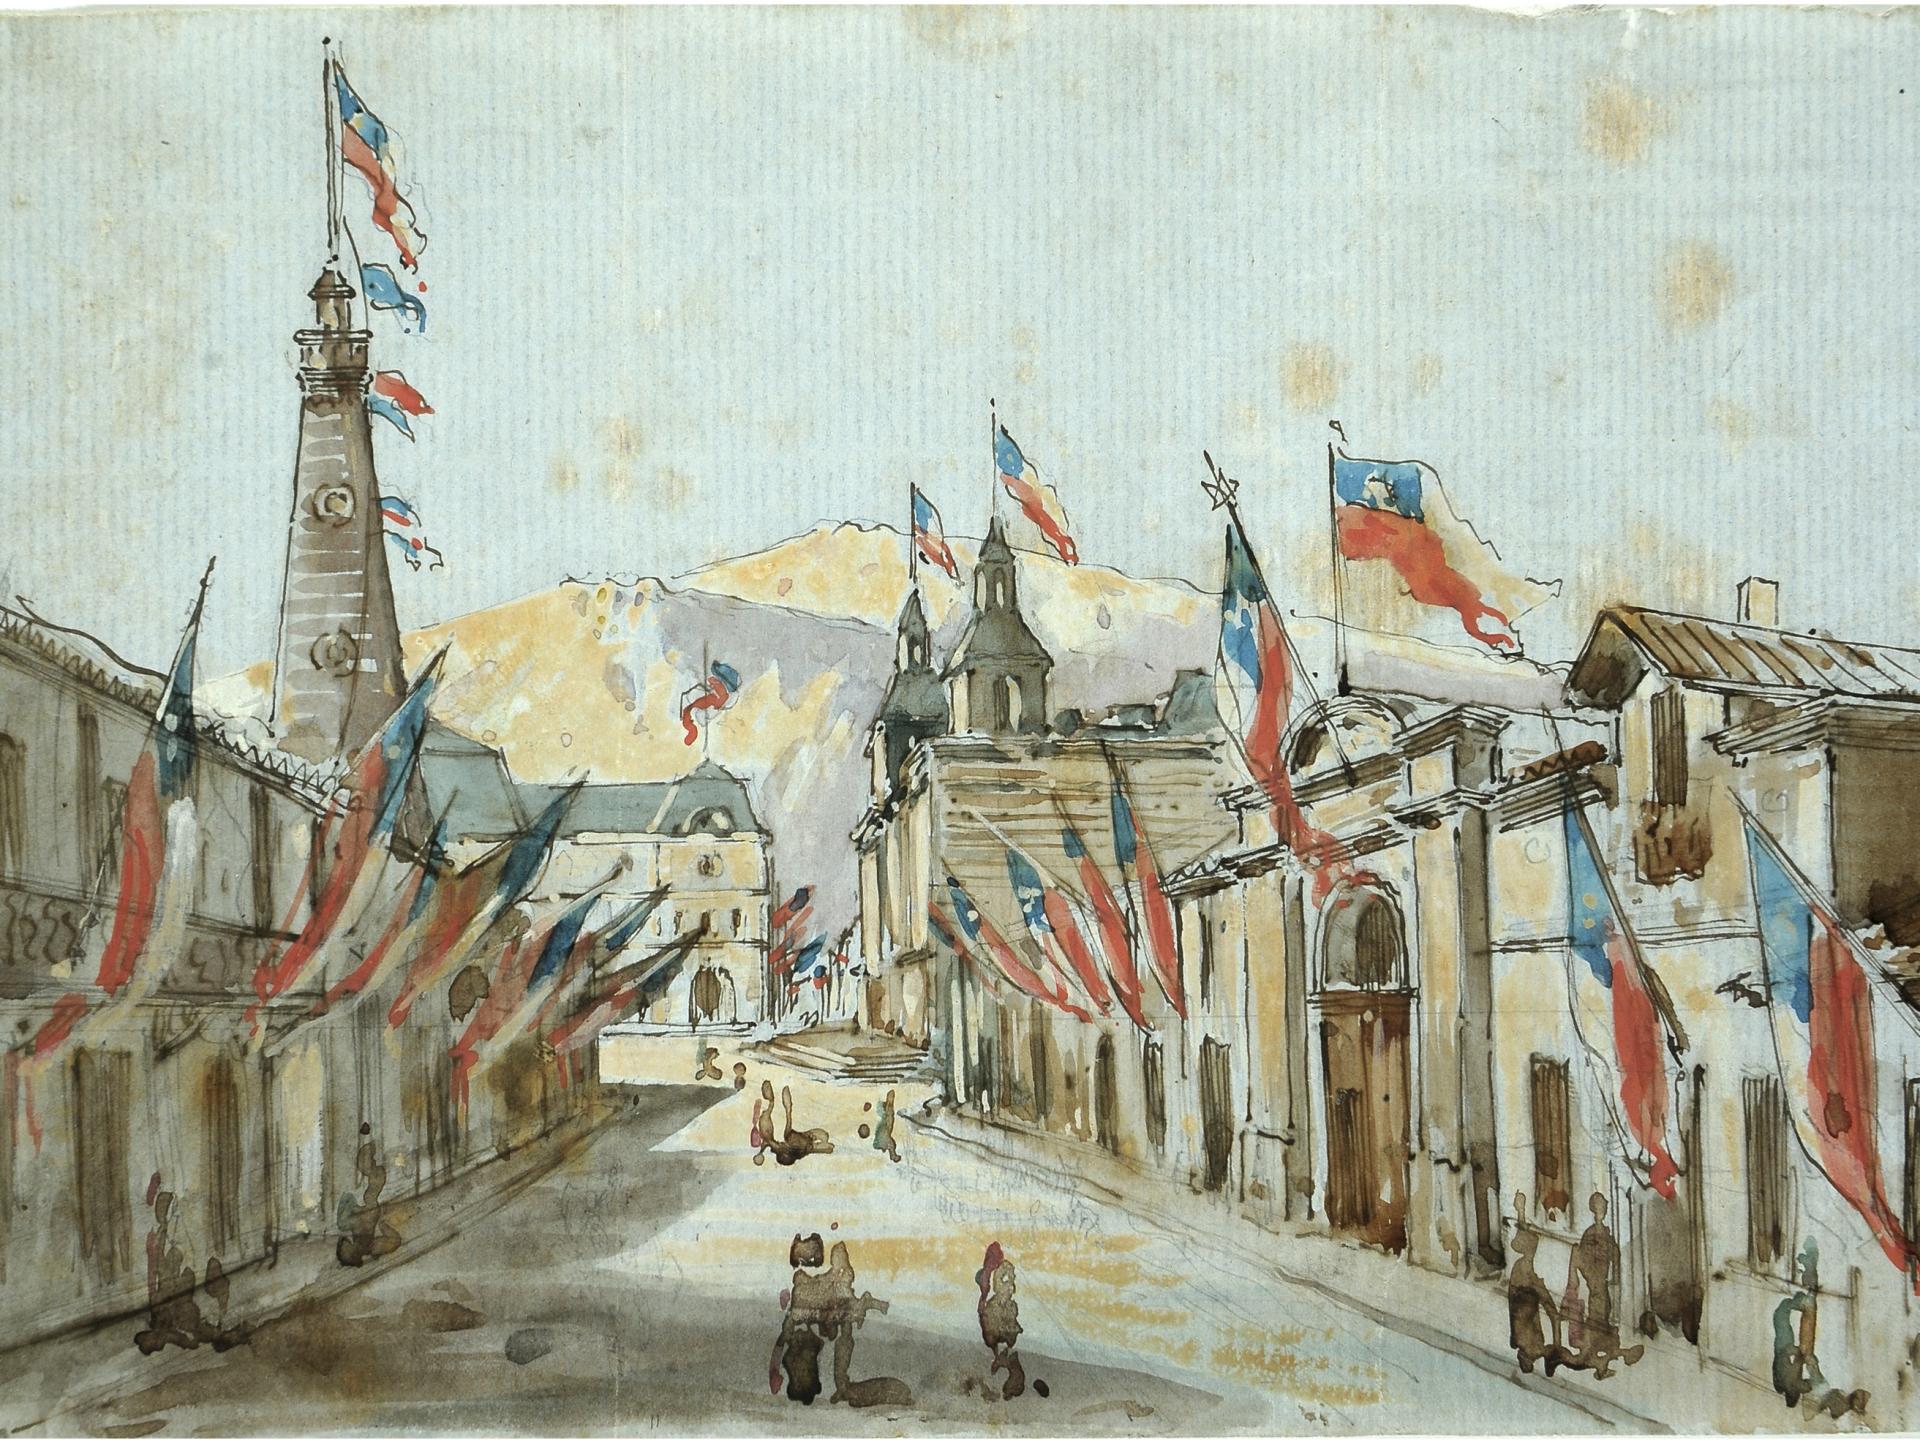 Banderas en el frontis de calle antigua de Santiago